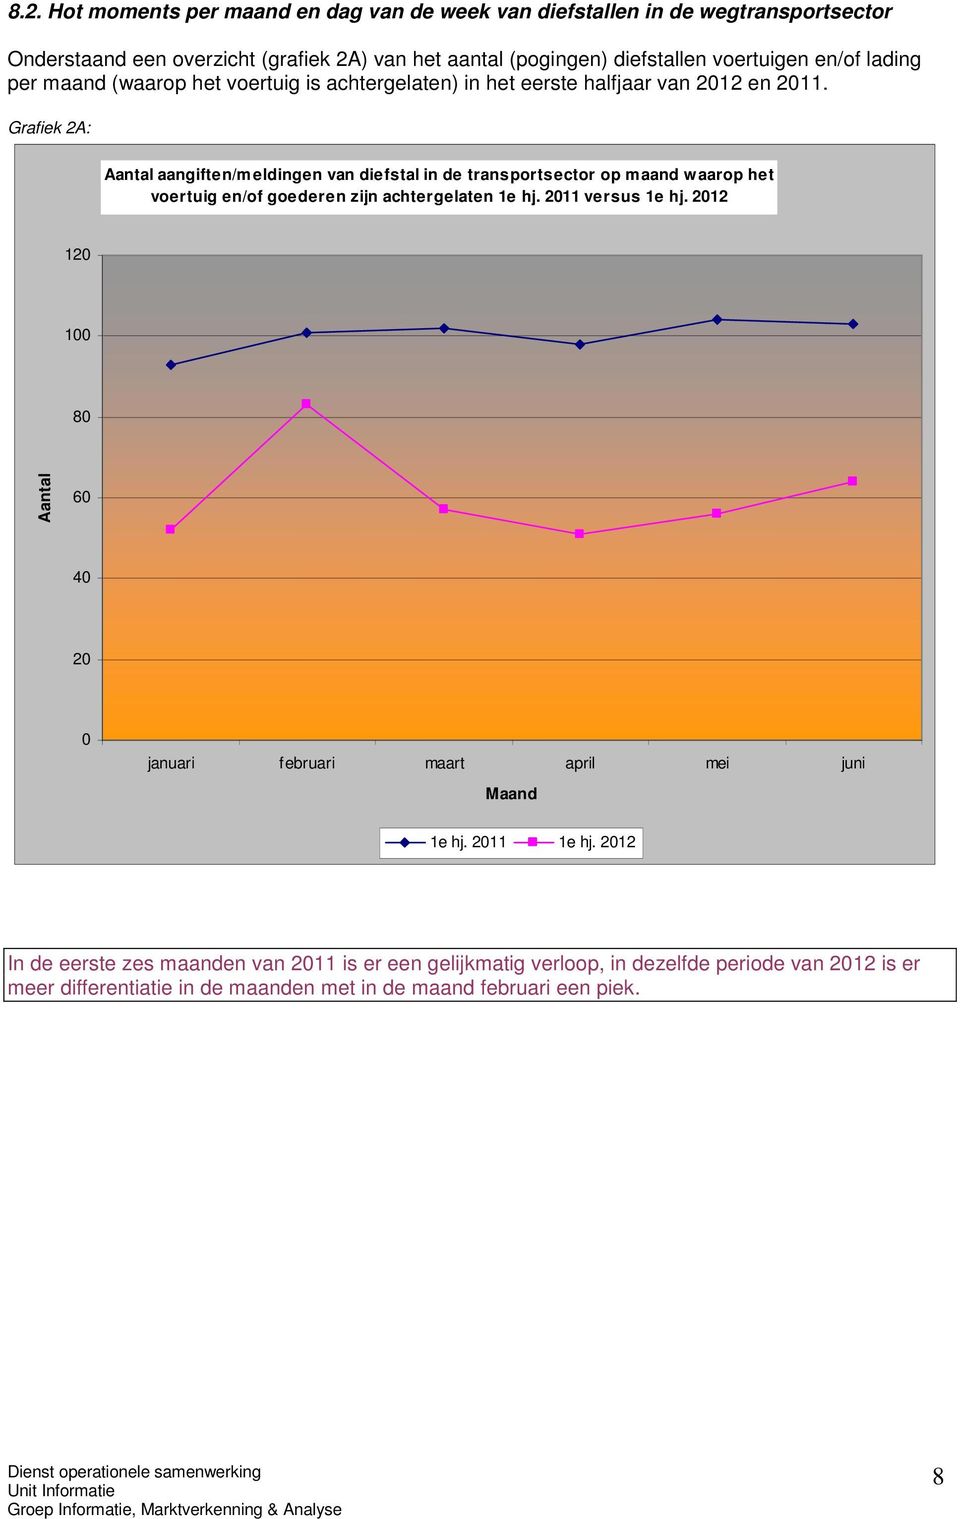 Grafiek 2A: aangiften/meldingen van diefstal in de transportsector op maand waarop het voertuig en/of goederen zijn achtergelaten 1e hj. 2011 versus 1e hj.